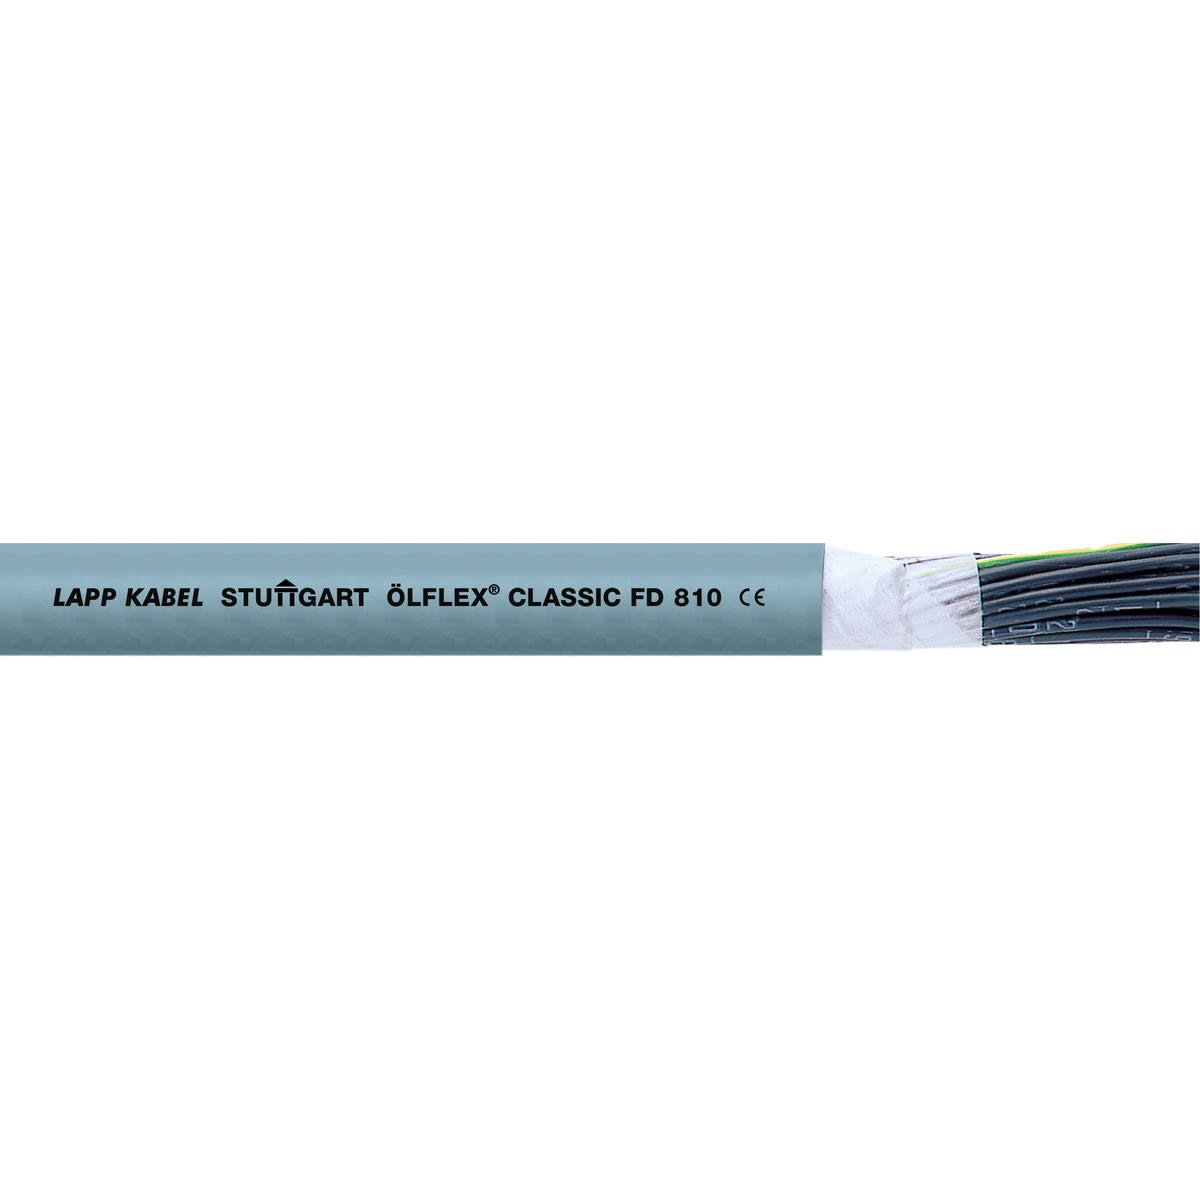 Lapp - ÖLFLEX CLASSIC FD 810 4G16